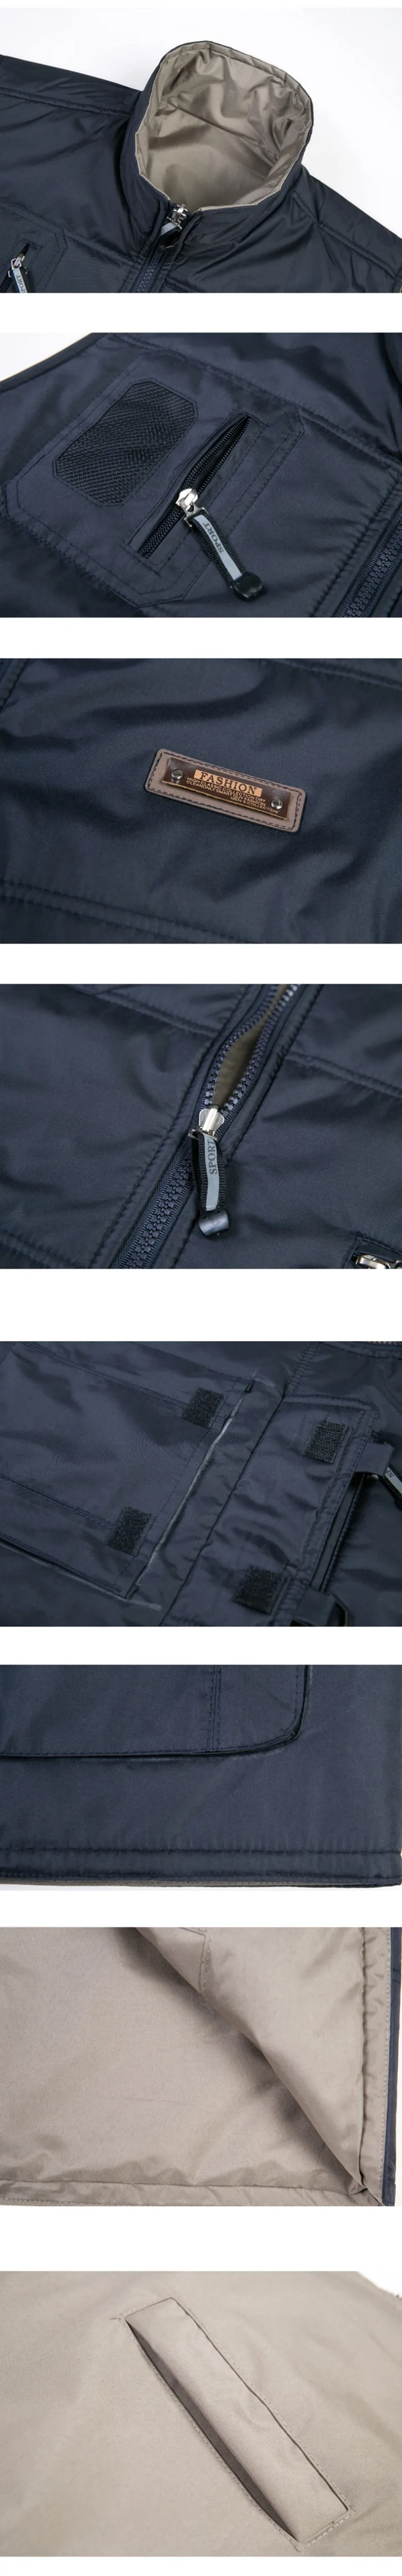 Толстый теплый хлопковый жилет для мужчин зима осень мужской повседневный мульти карман фотографа без рукавов куртка мешковатый мужской жилет